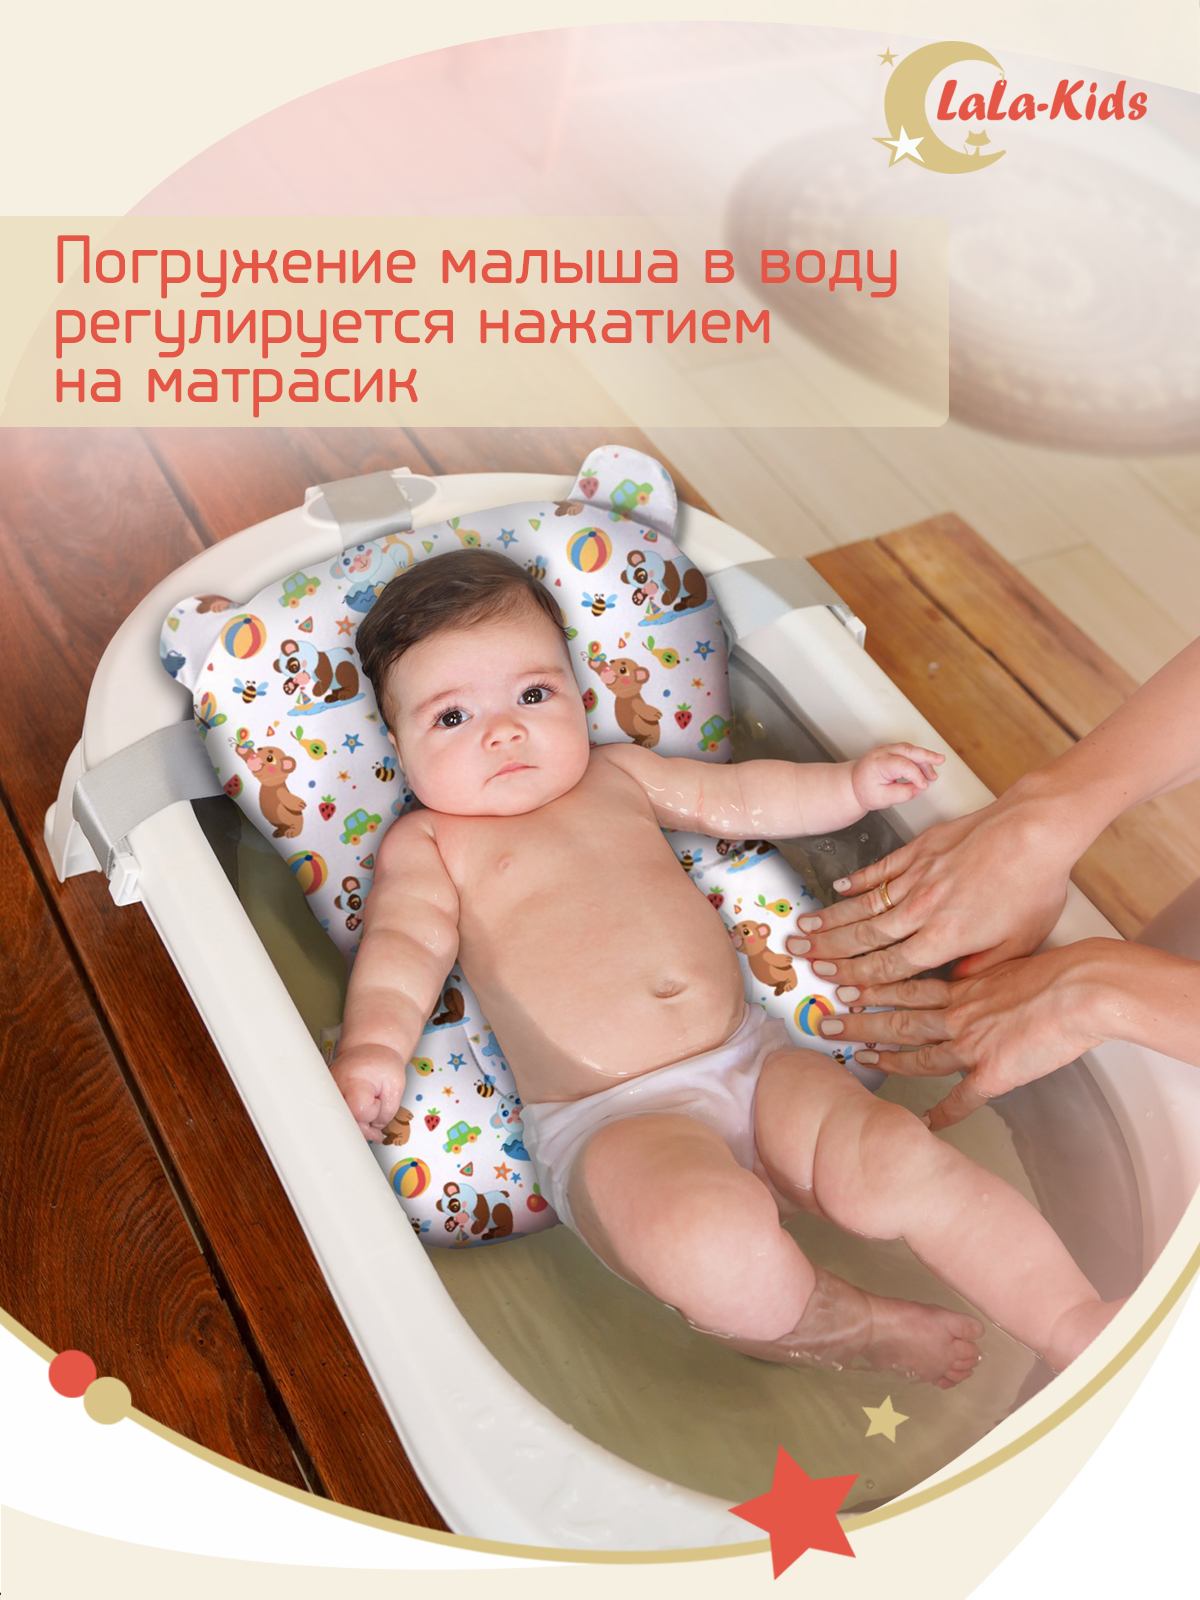 Детская ванночка с термометром LaLa-Kids складная с матрасиком для купания новорожденных - фото 18